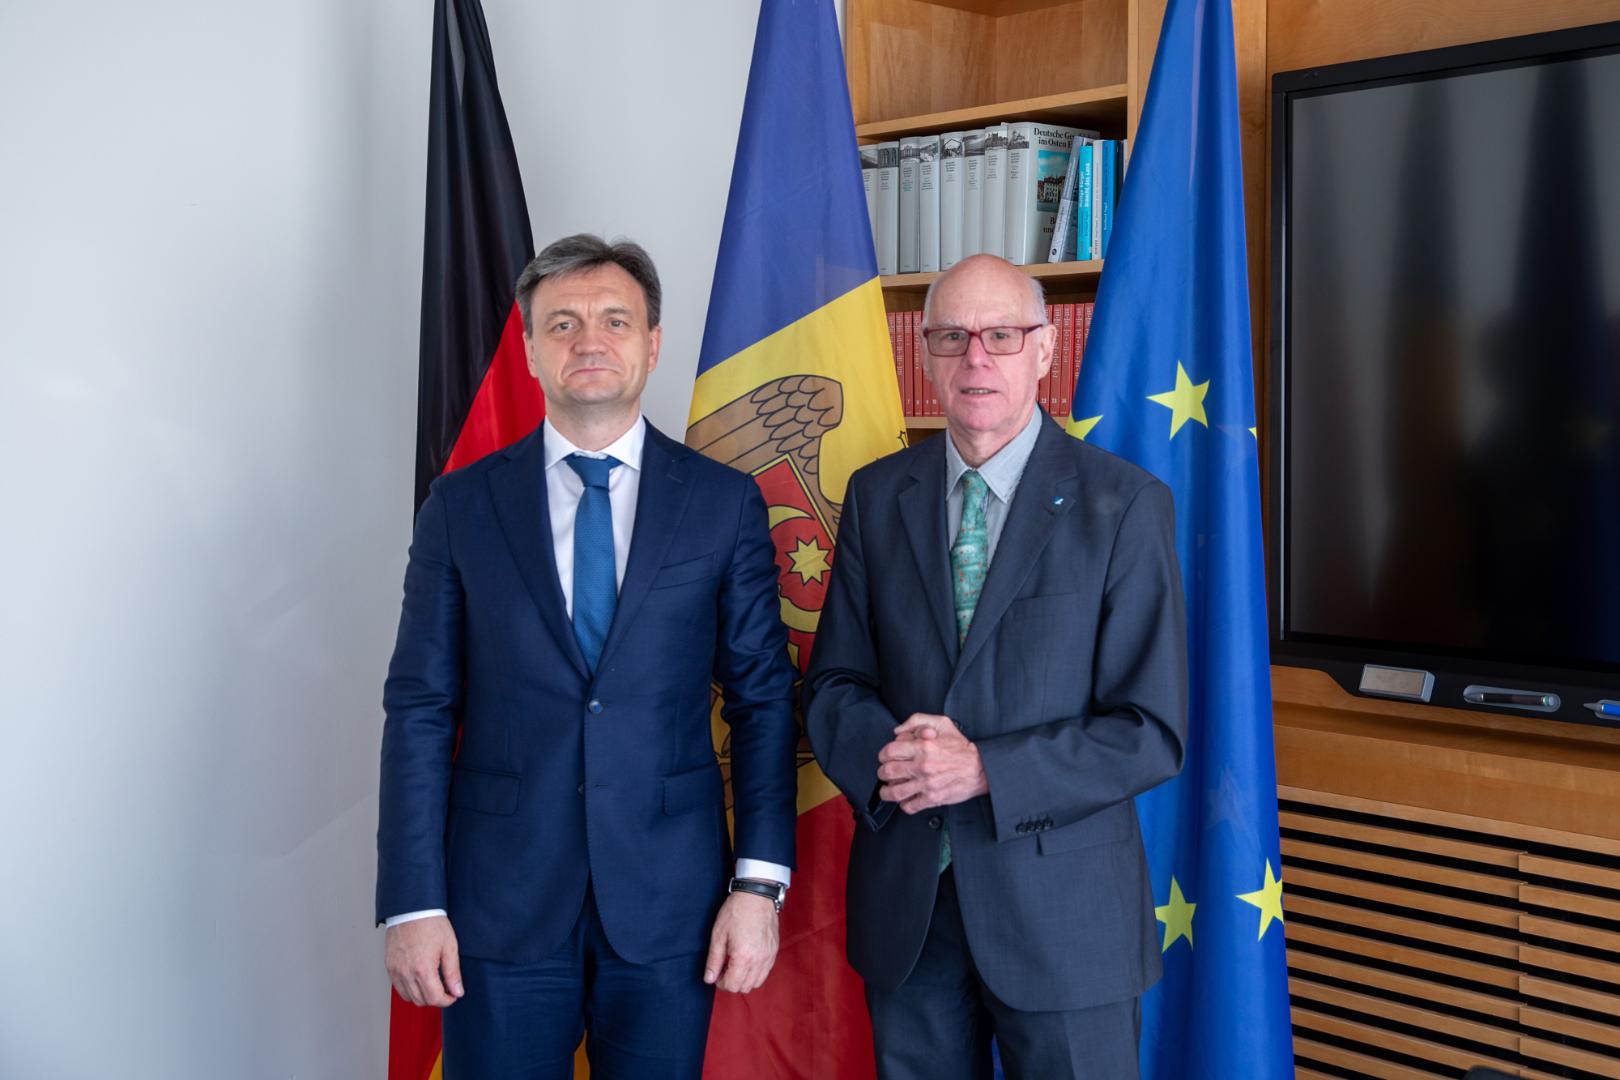 Dorin Recean, Premierminister der Republik Moldau, besucht die Konrad-Adenauer-Stiftung